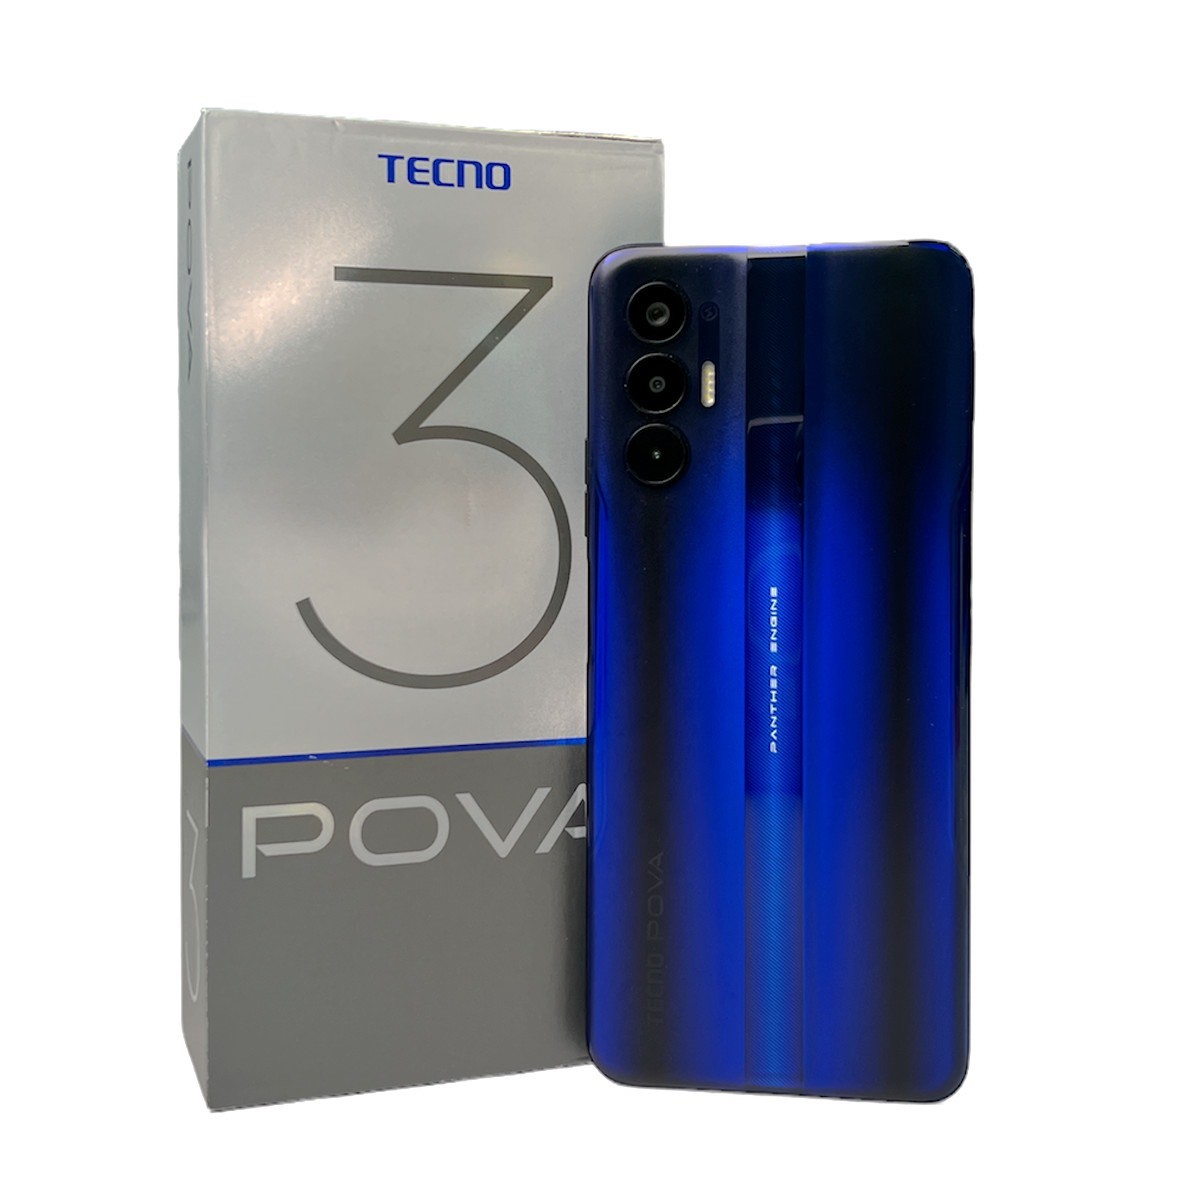 Đánh giá TECNO POVA 3 dòng điện thoại được bạn trẻ săn sale gần đây-3